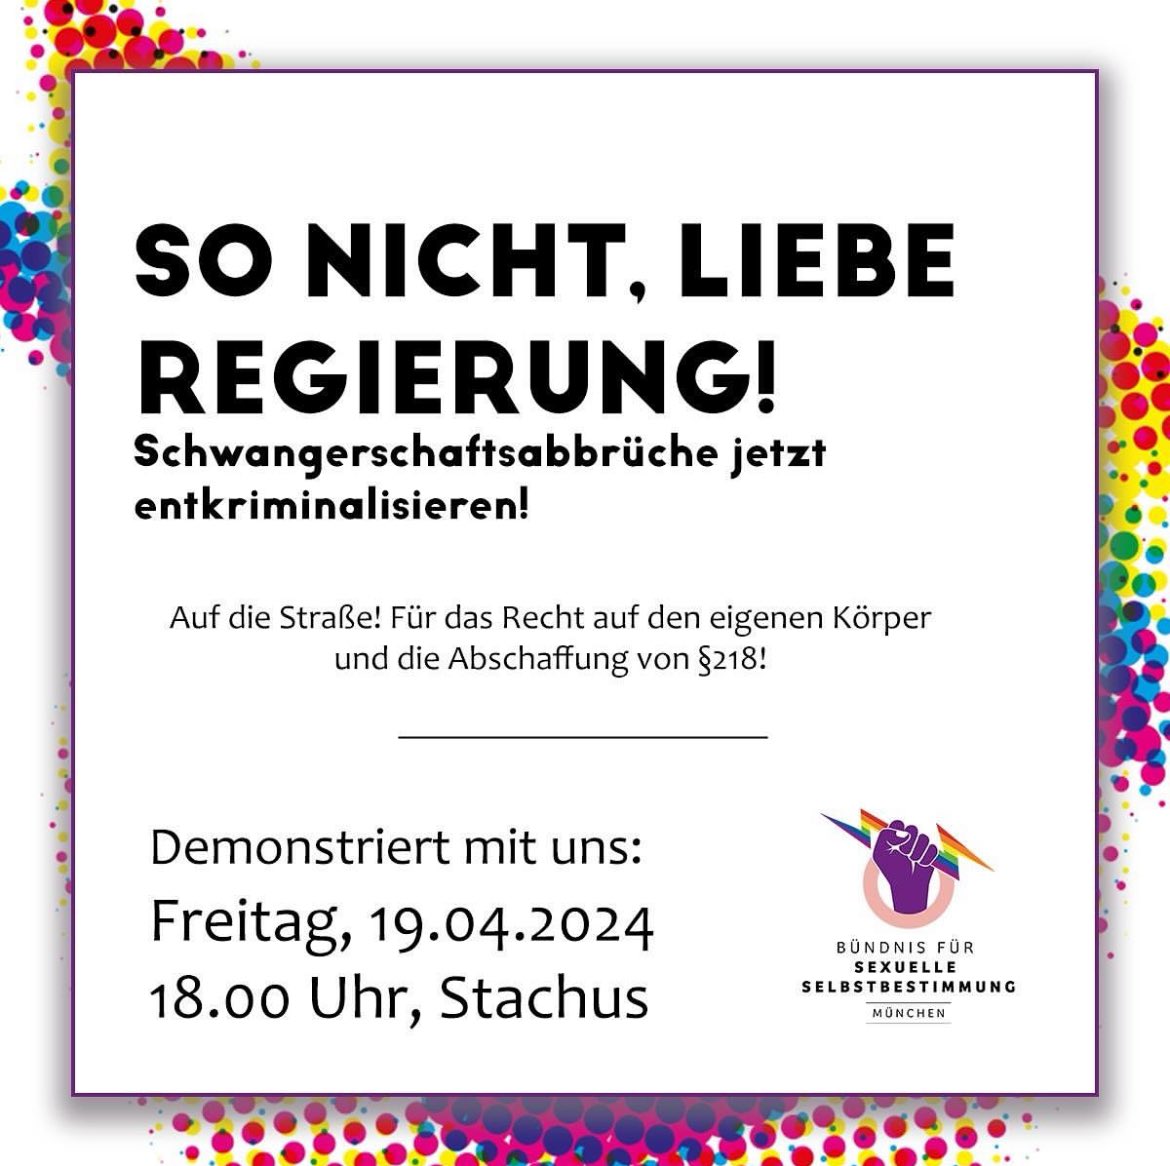 Liebe Leute. Packt Eure Banner und Schilder vom letzten Samstag noch nicht weg. Für kommenden Freitag mobilisiert das Bündnis für sexuelle Selbstbestimmung auf 18 Uhr an den Karlsplatz/Stachus. See you there! #wegmit218 #münchen